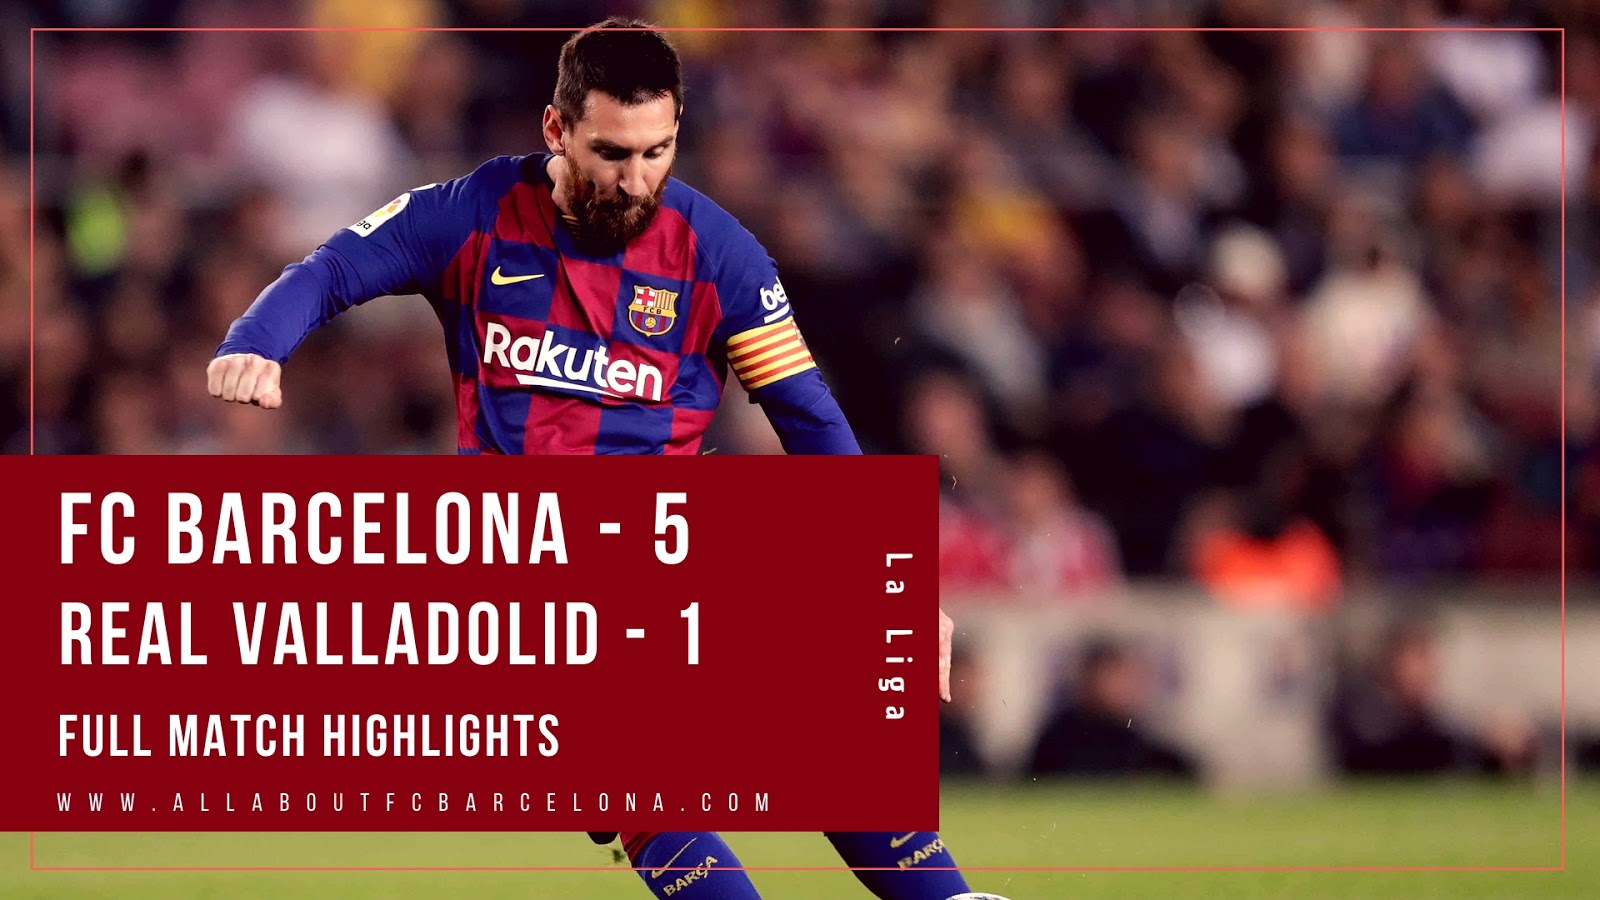 FC Barcelona vs Real Valladolid Full Match Highlights | FC - 5, Real Valladolid - 1